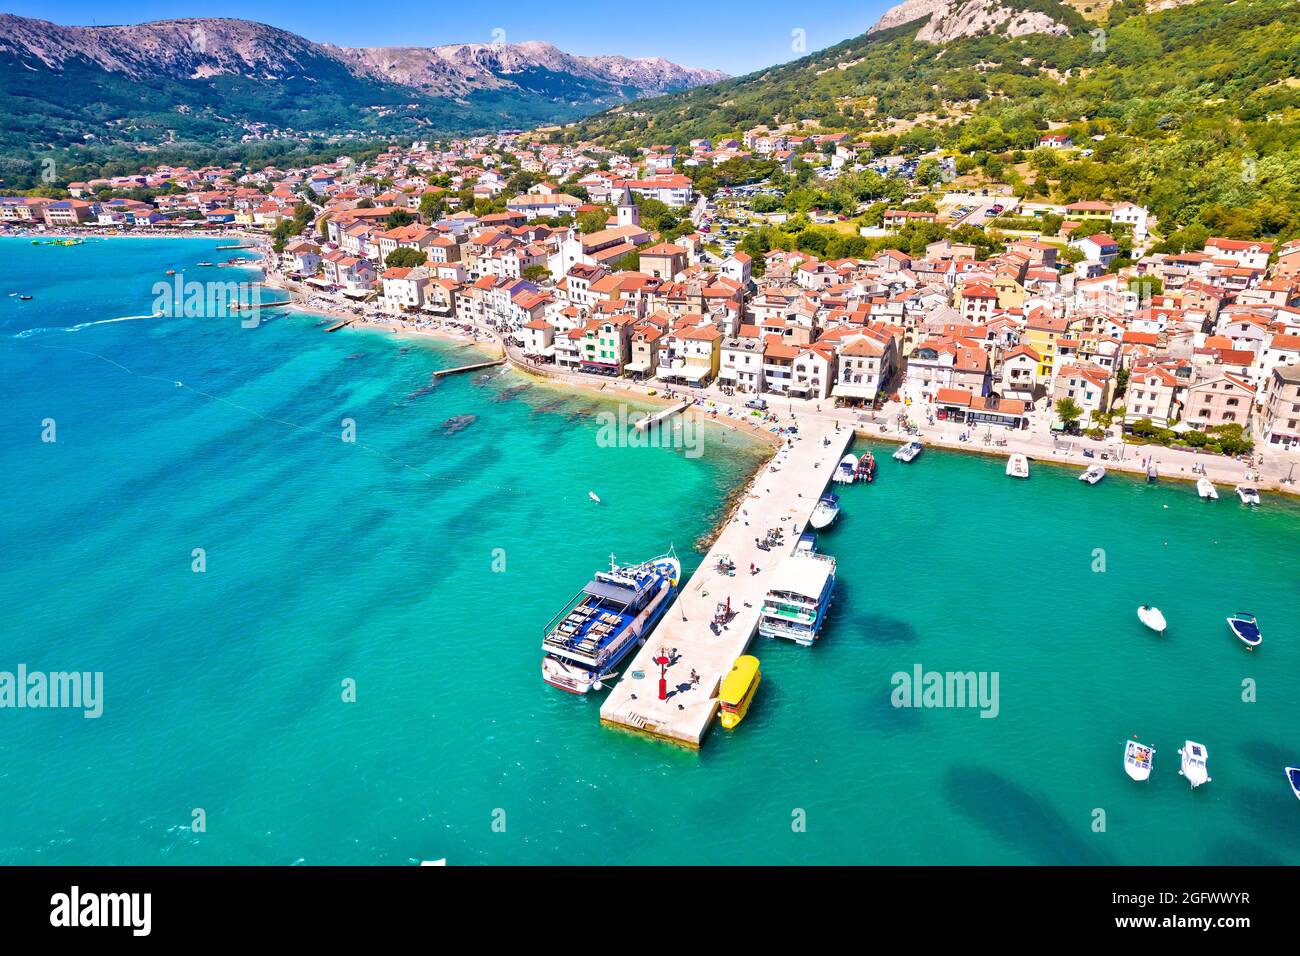 Ville de Baska front de mer vue panoramique aérienne, destination touristique sur l'île de Krk, Adriatique, Croatie Banque D'Images